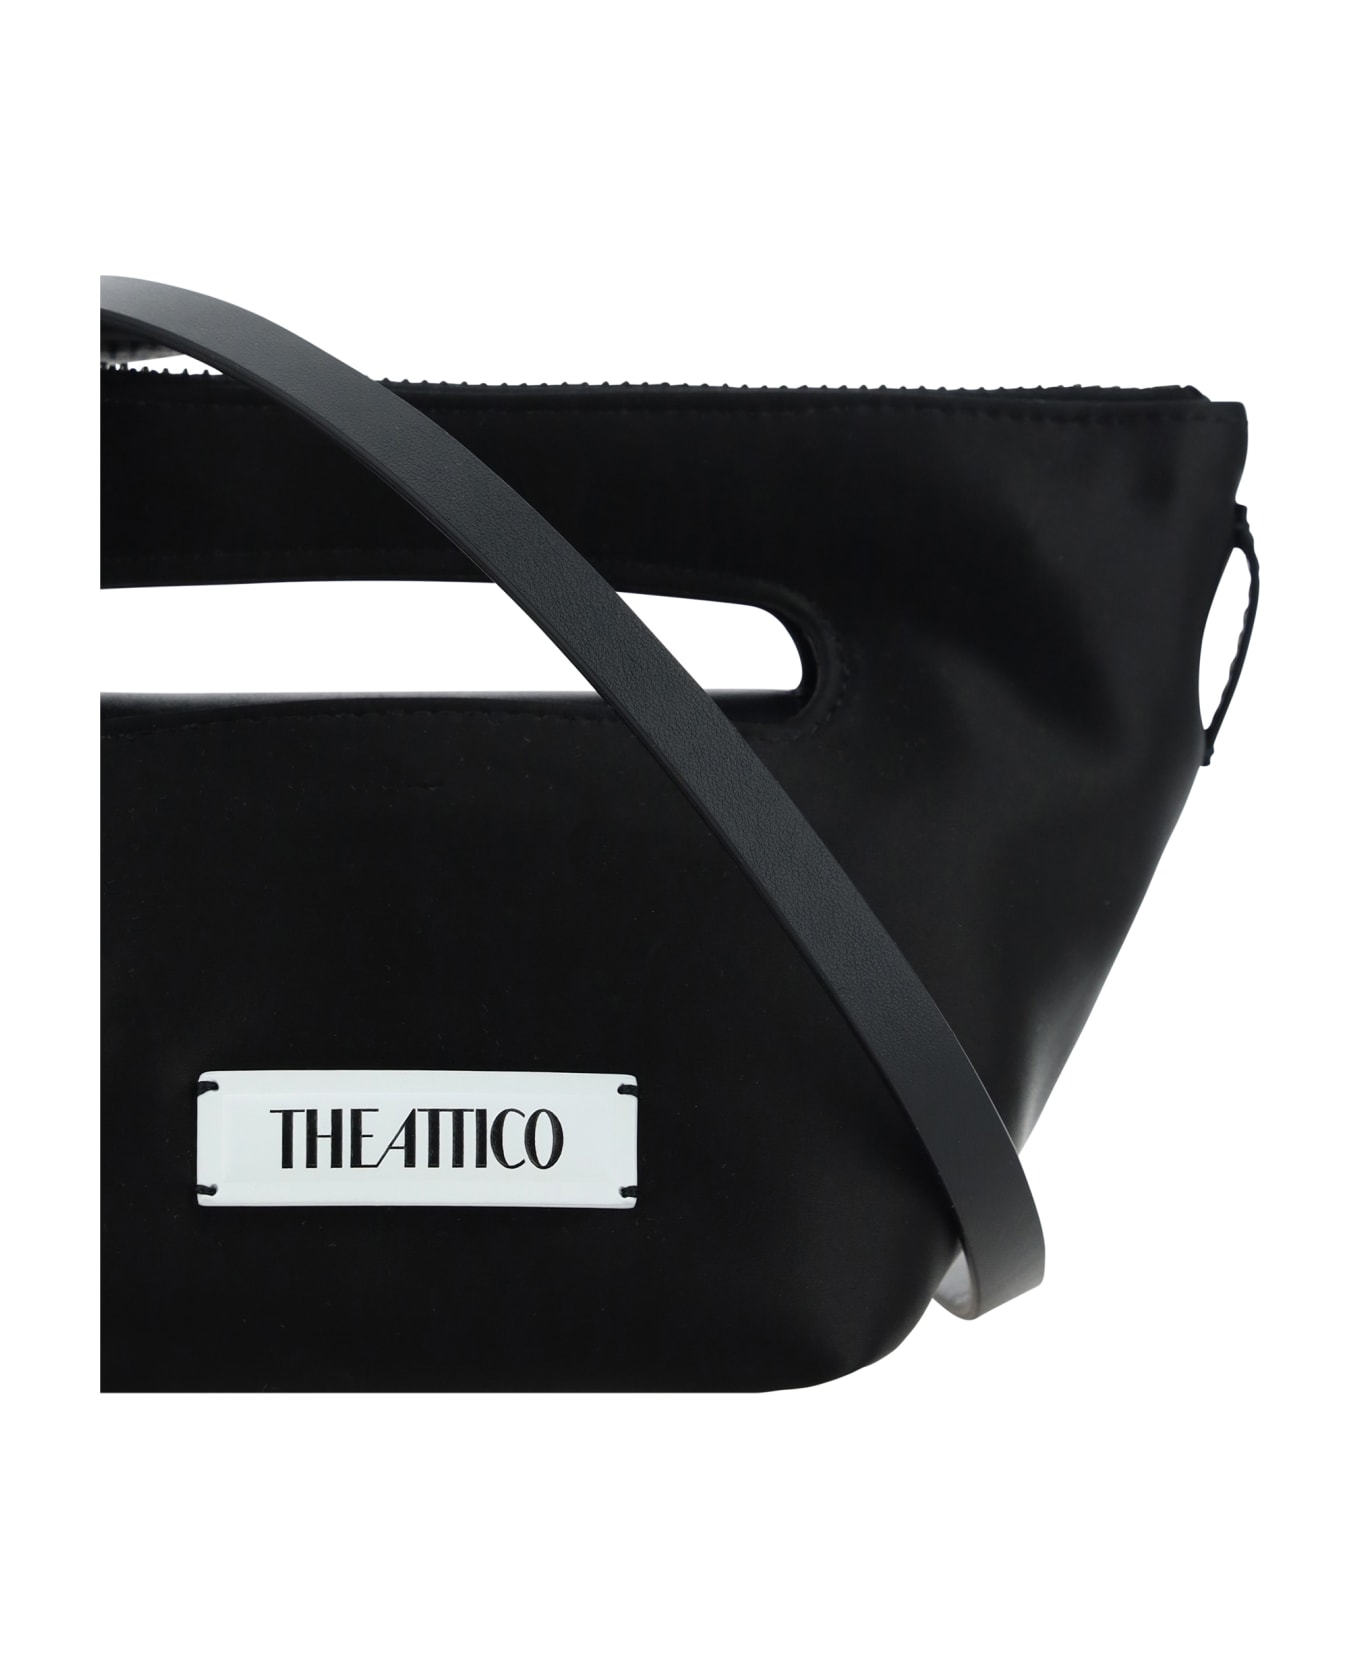 The Attico Via Dei Giardini 15 Handbag - BLACK バッグ